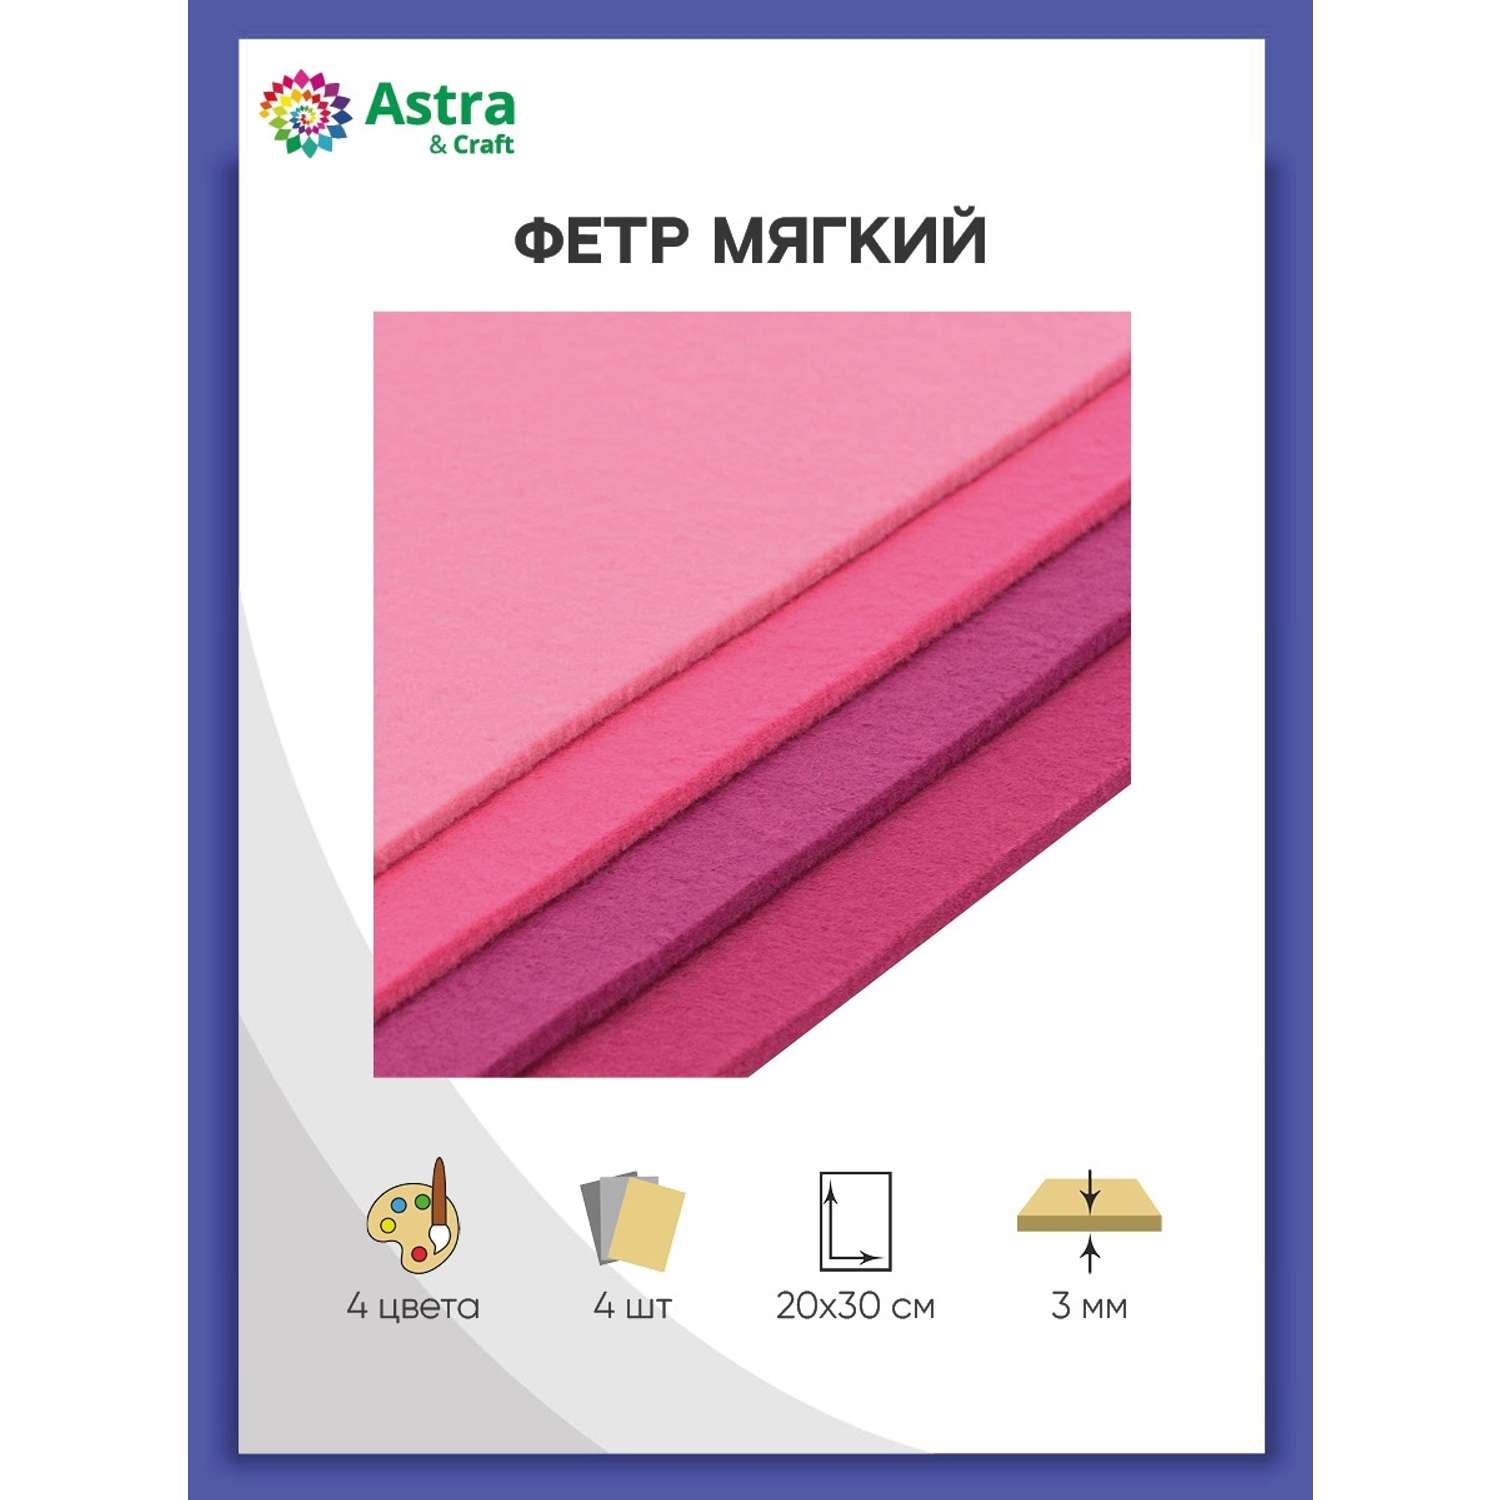 Фетр Astra Craft Листовой мягкий ассорти толщина 3 мм размер 20х30 см в упаковке 4 шт цвет номер 3 - фото 1